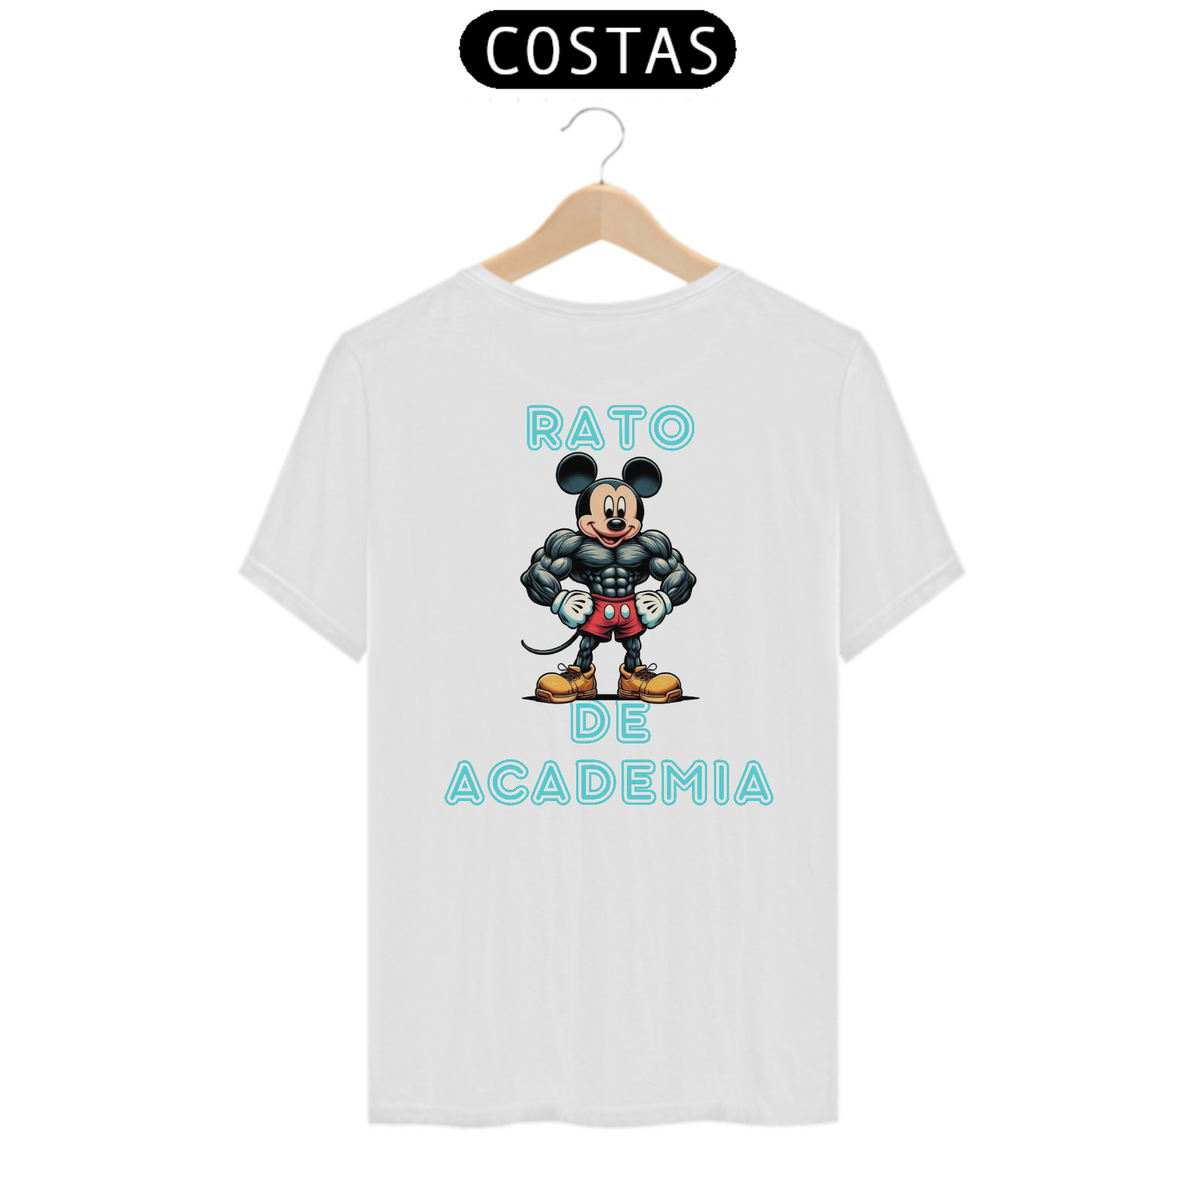 Nome do produto: Camiseta Rato de academia CLASSIC